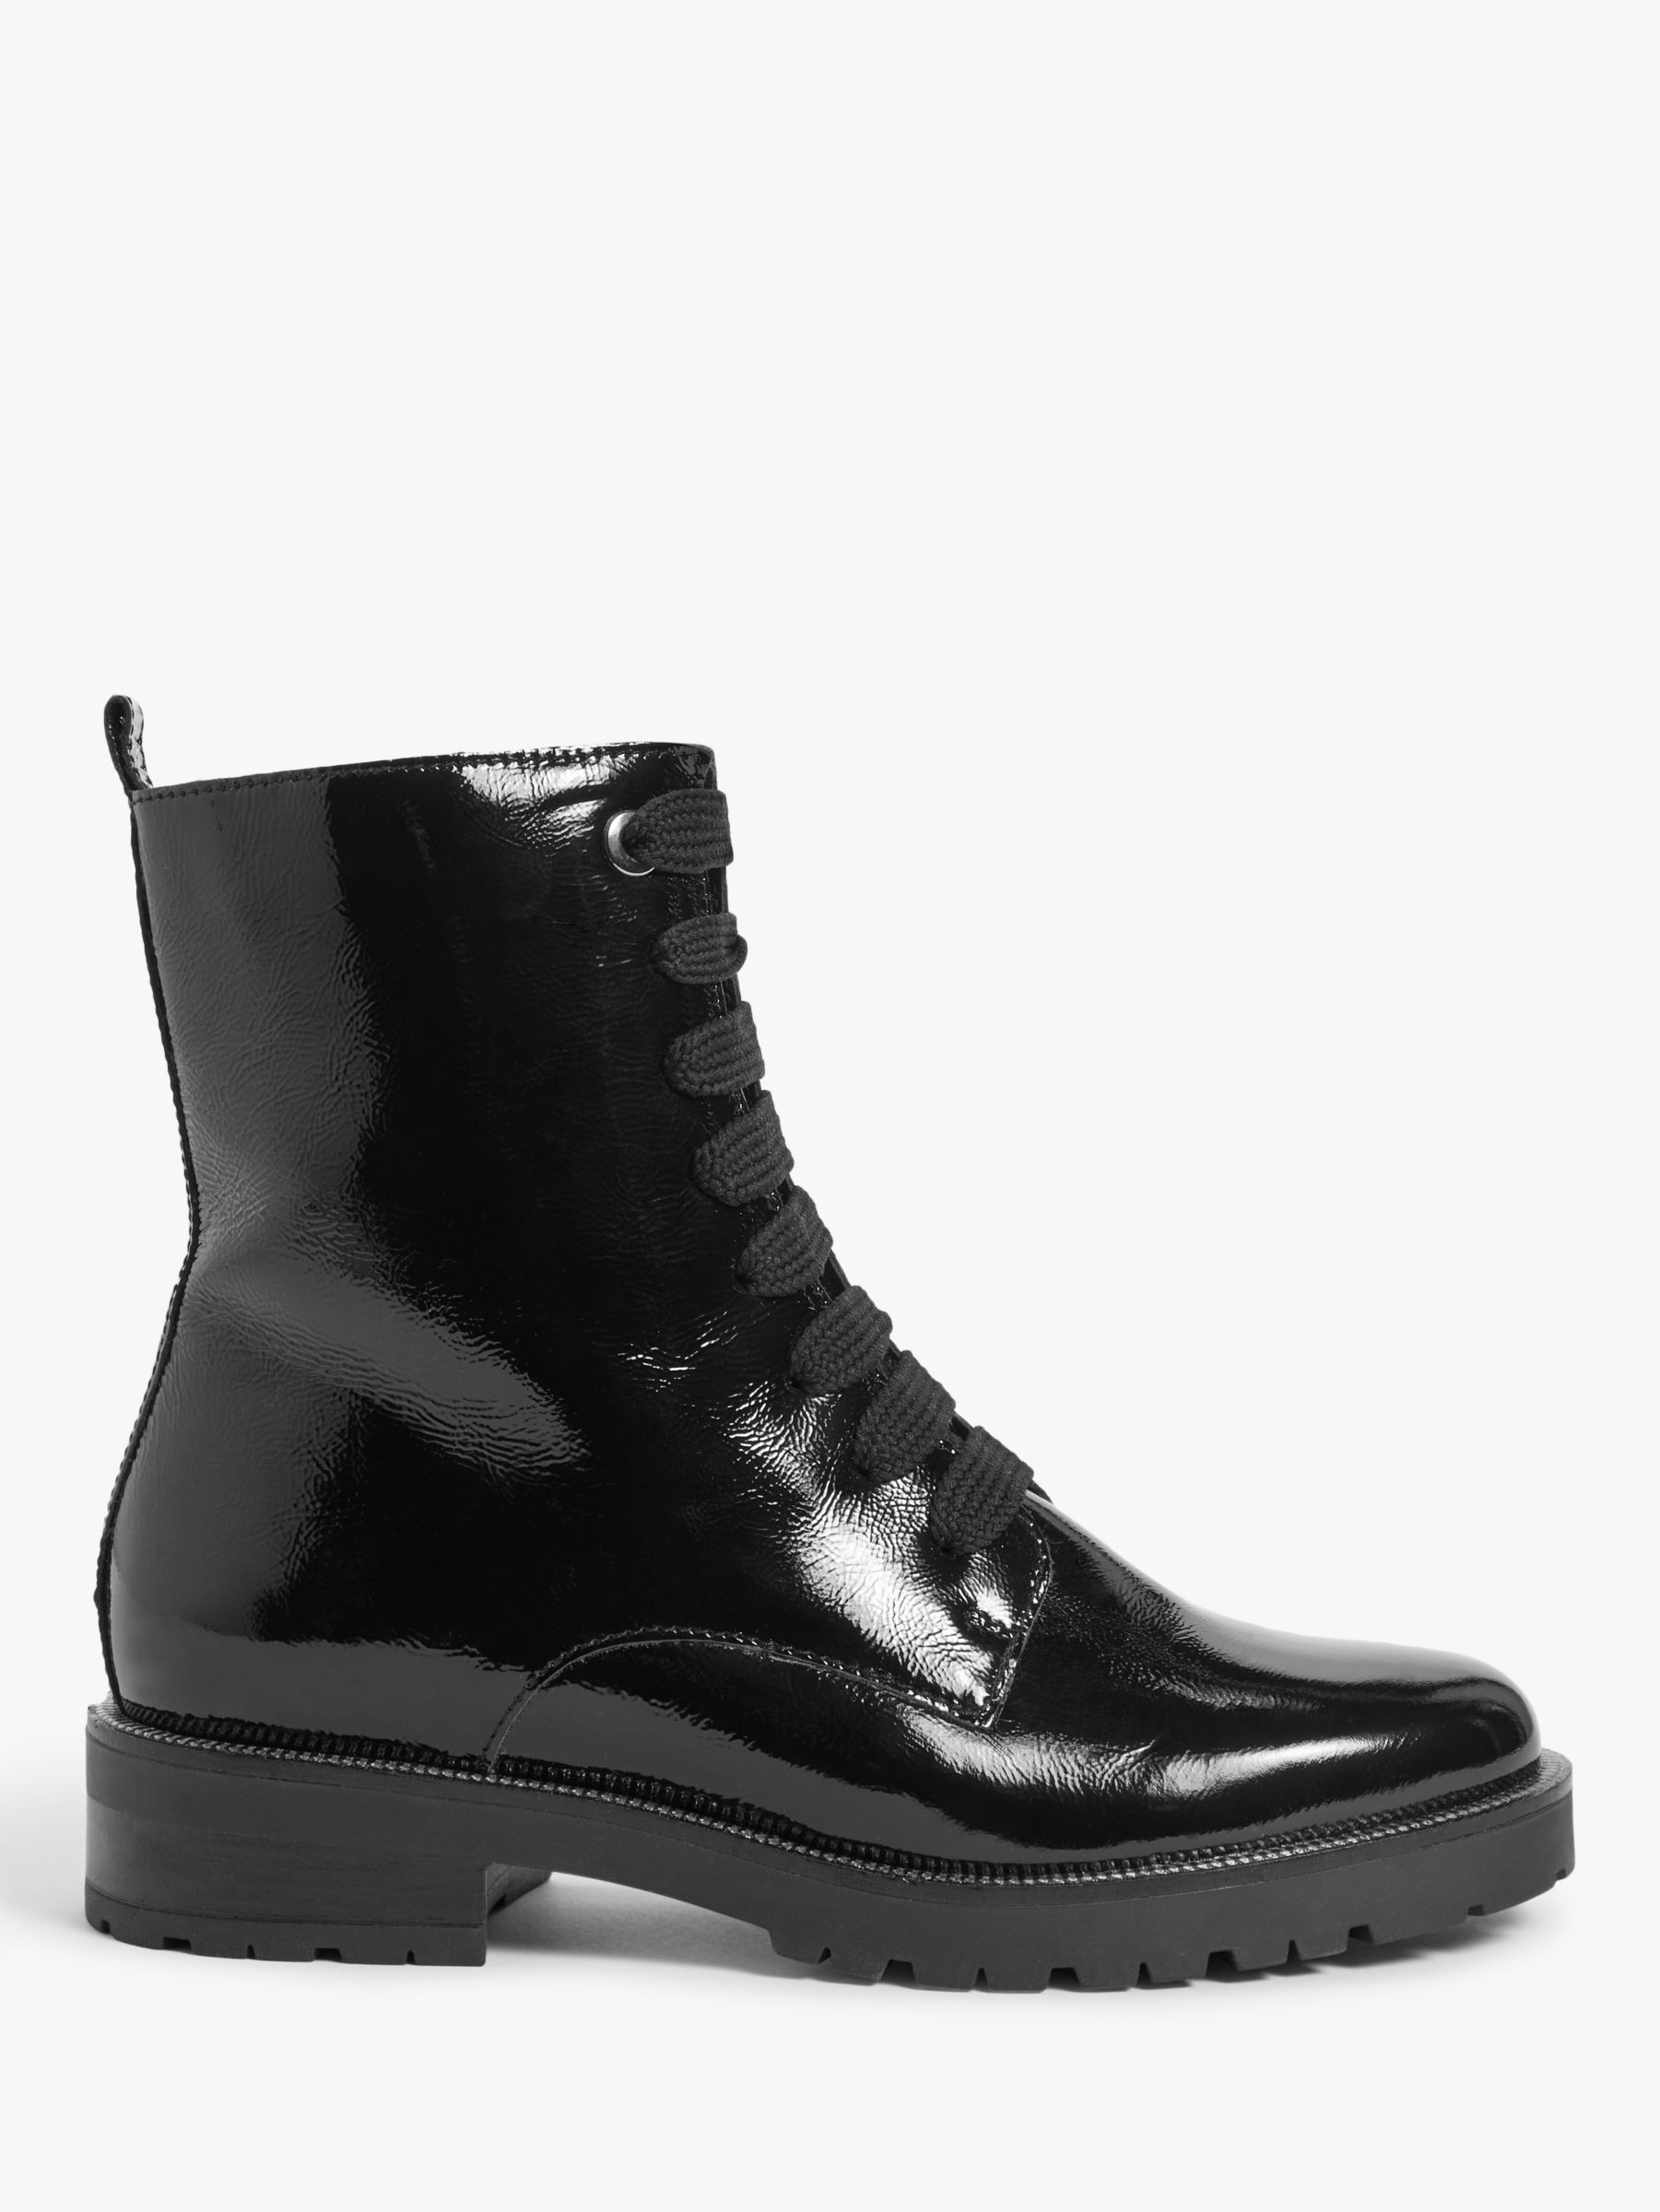 John Lewis Peyton Leather Ankle Boots, Black at John Lewis & Partners